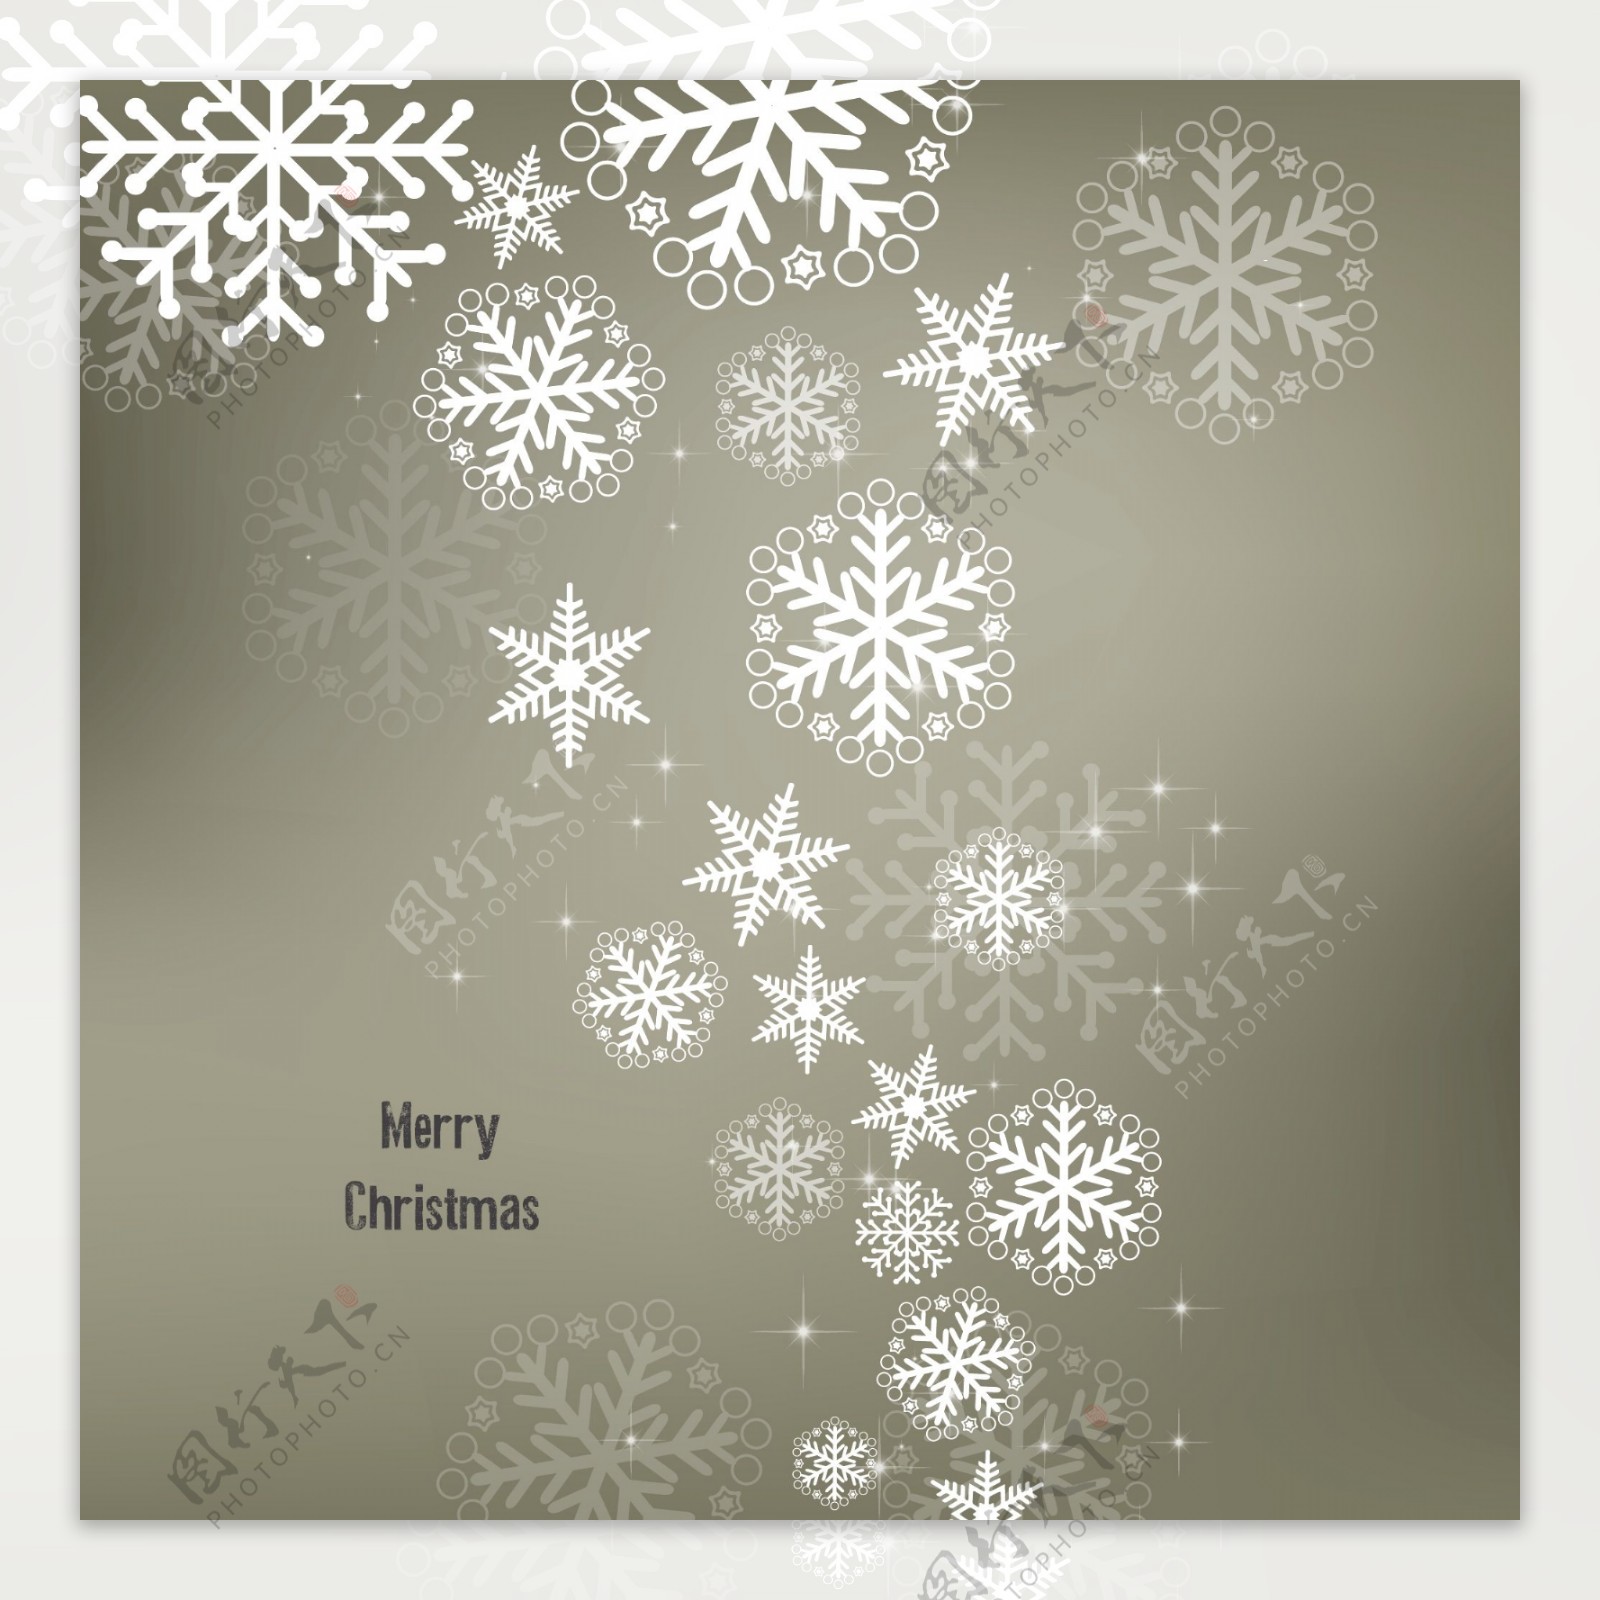 圣诞设计背景与闪闪发光的雪花自由向量